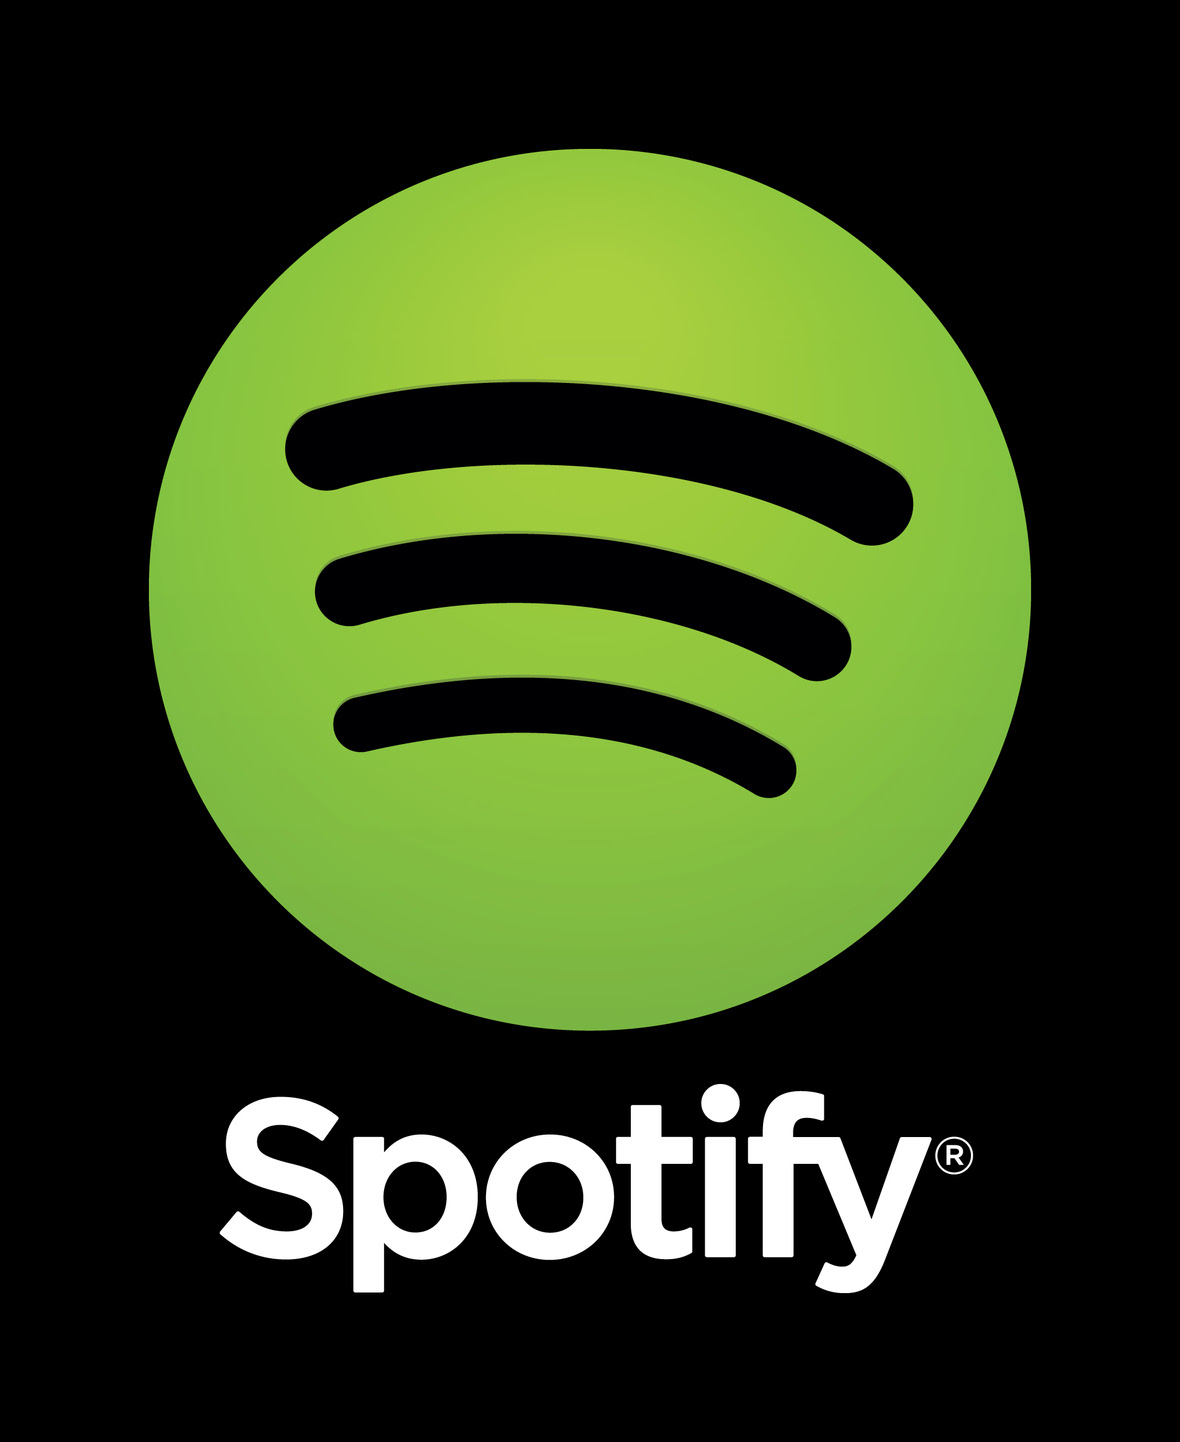 Spotify logo vertical black